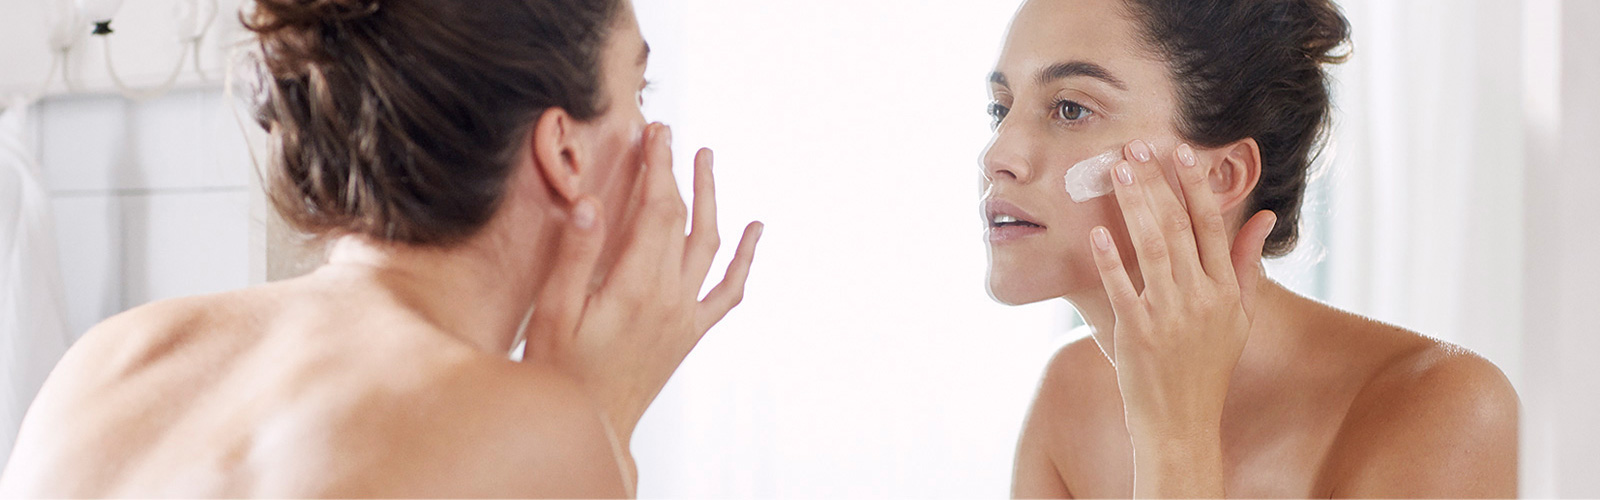 Woman moisturising her face